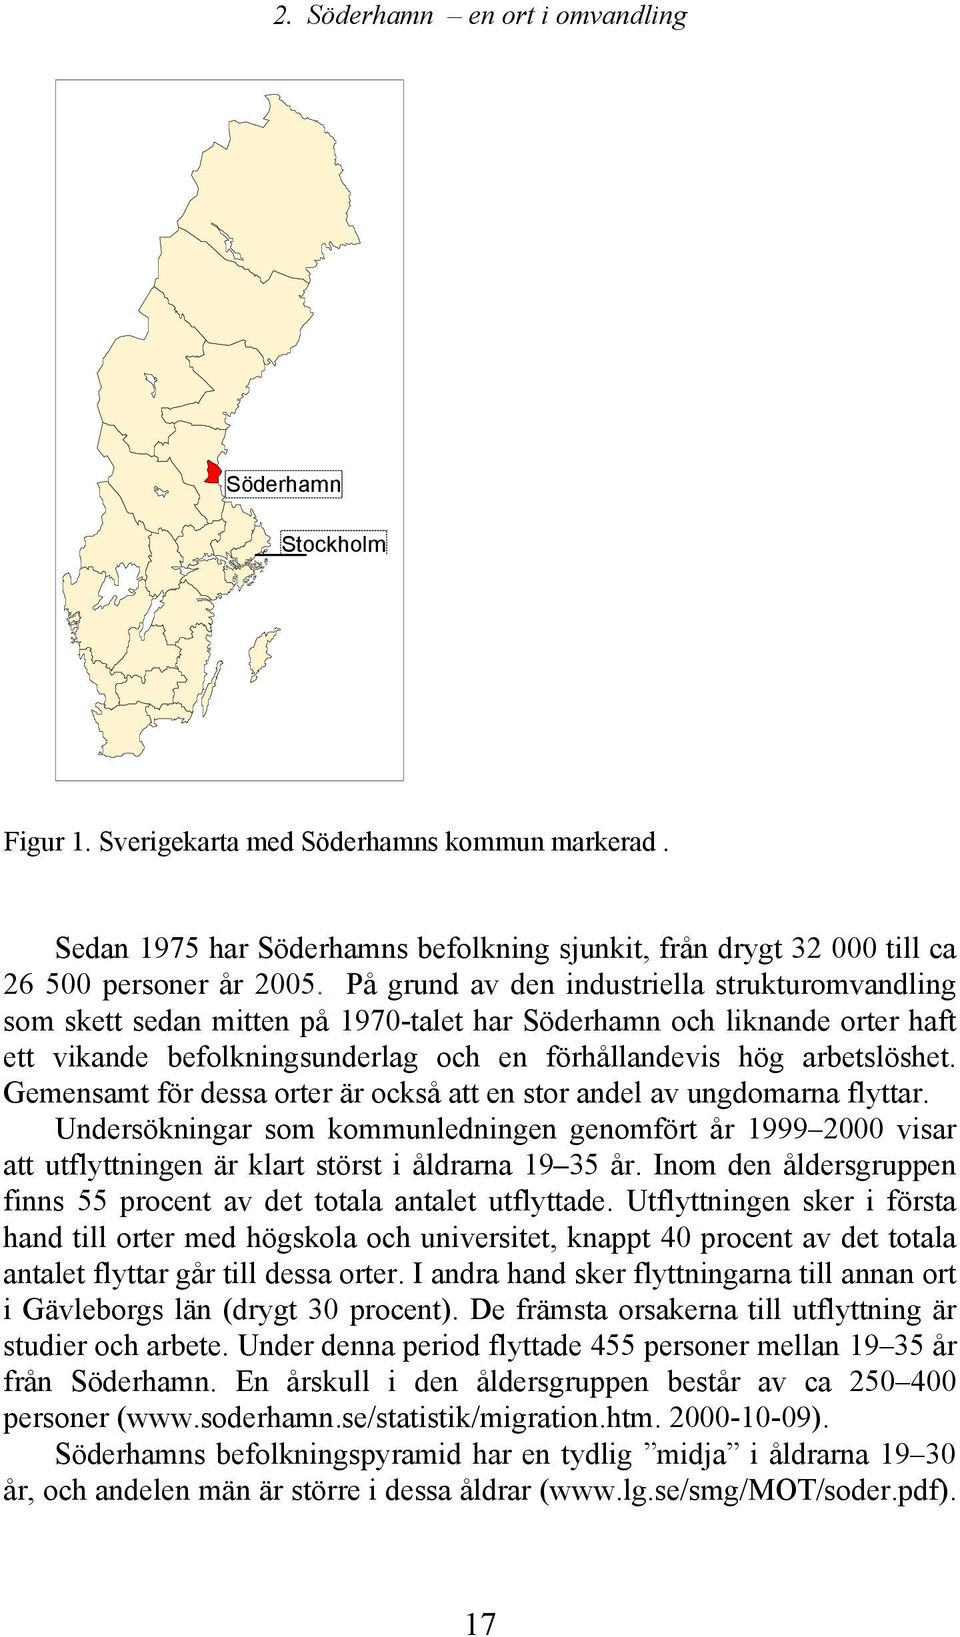 På grund av den industriella strukturomvandling som skett sedan mitten på 1970-talet har Söderhamn och liknande orter haft ett vikande befolkningsunderlag och en förhållandevis hög arbetslöshet.